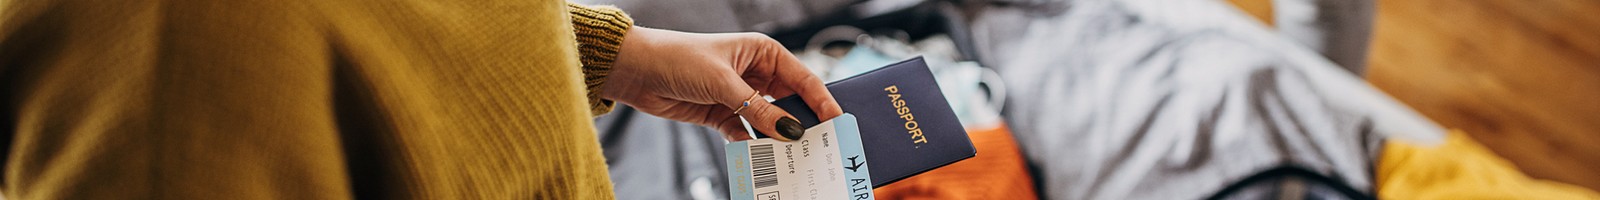 Protégez vos données : détruisez votre carte d’embarquement après un vol